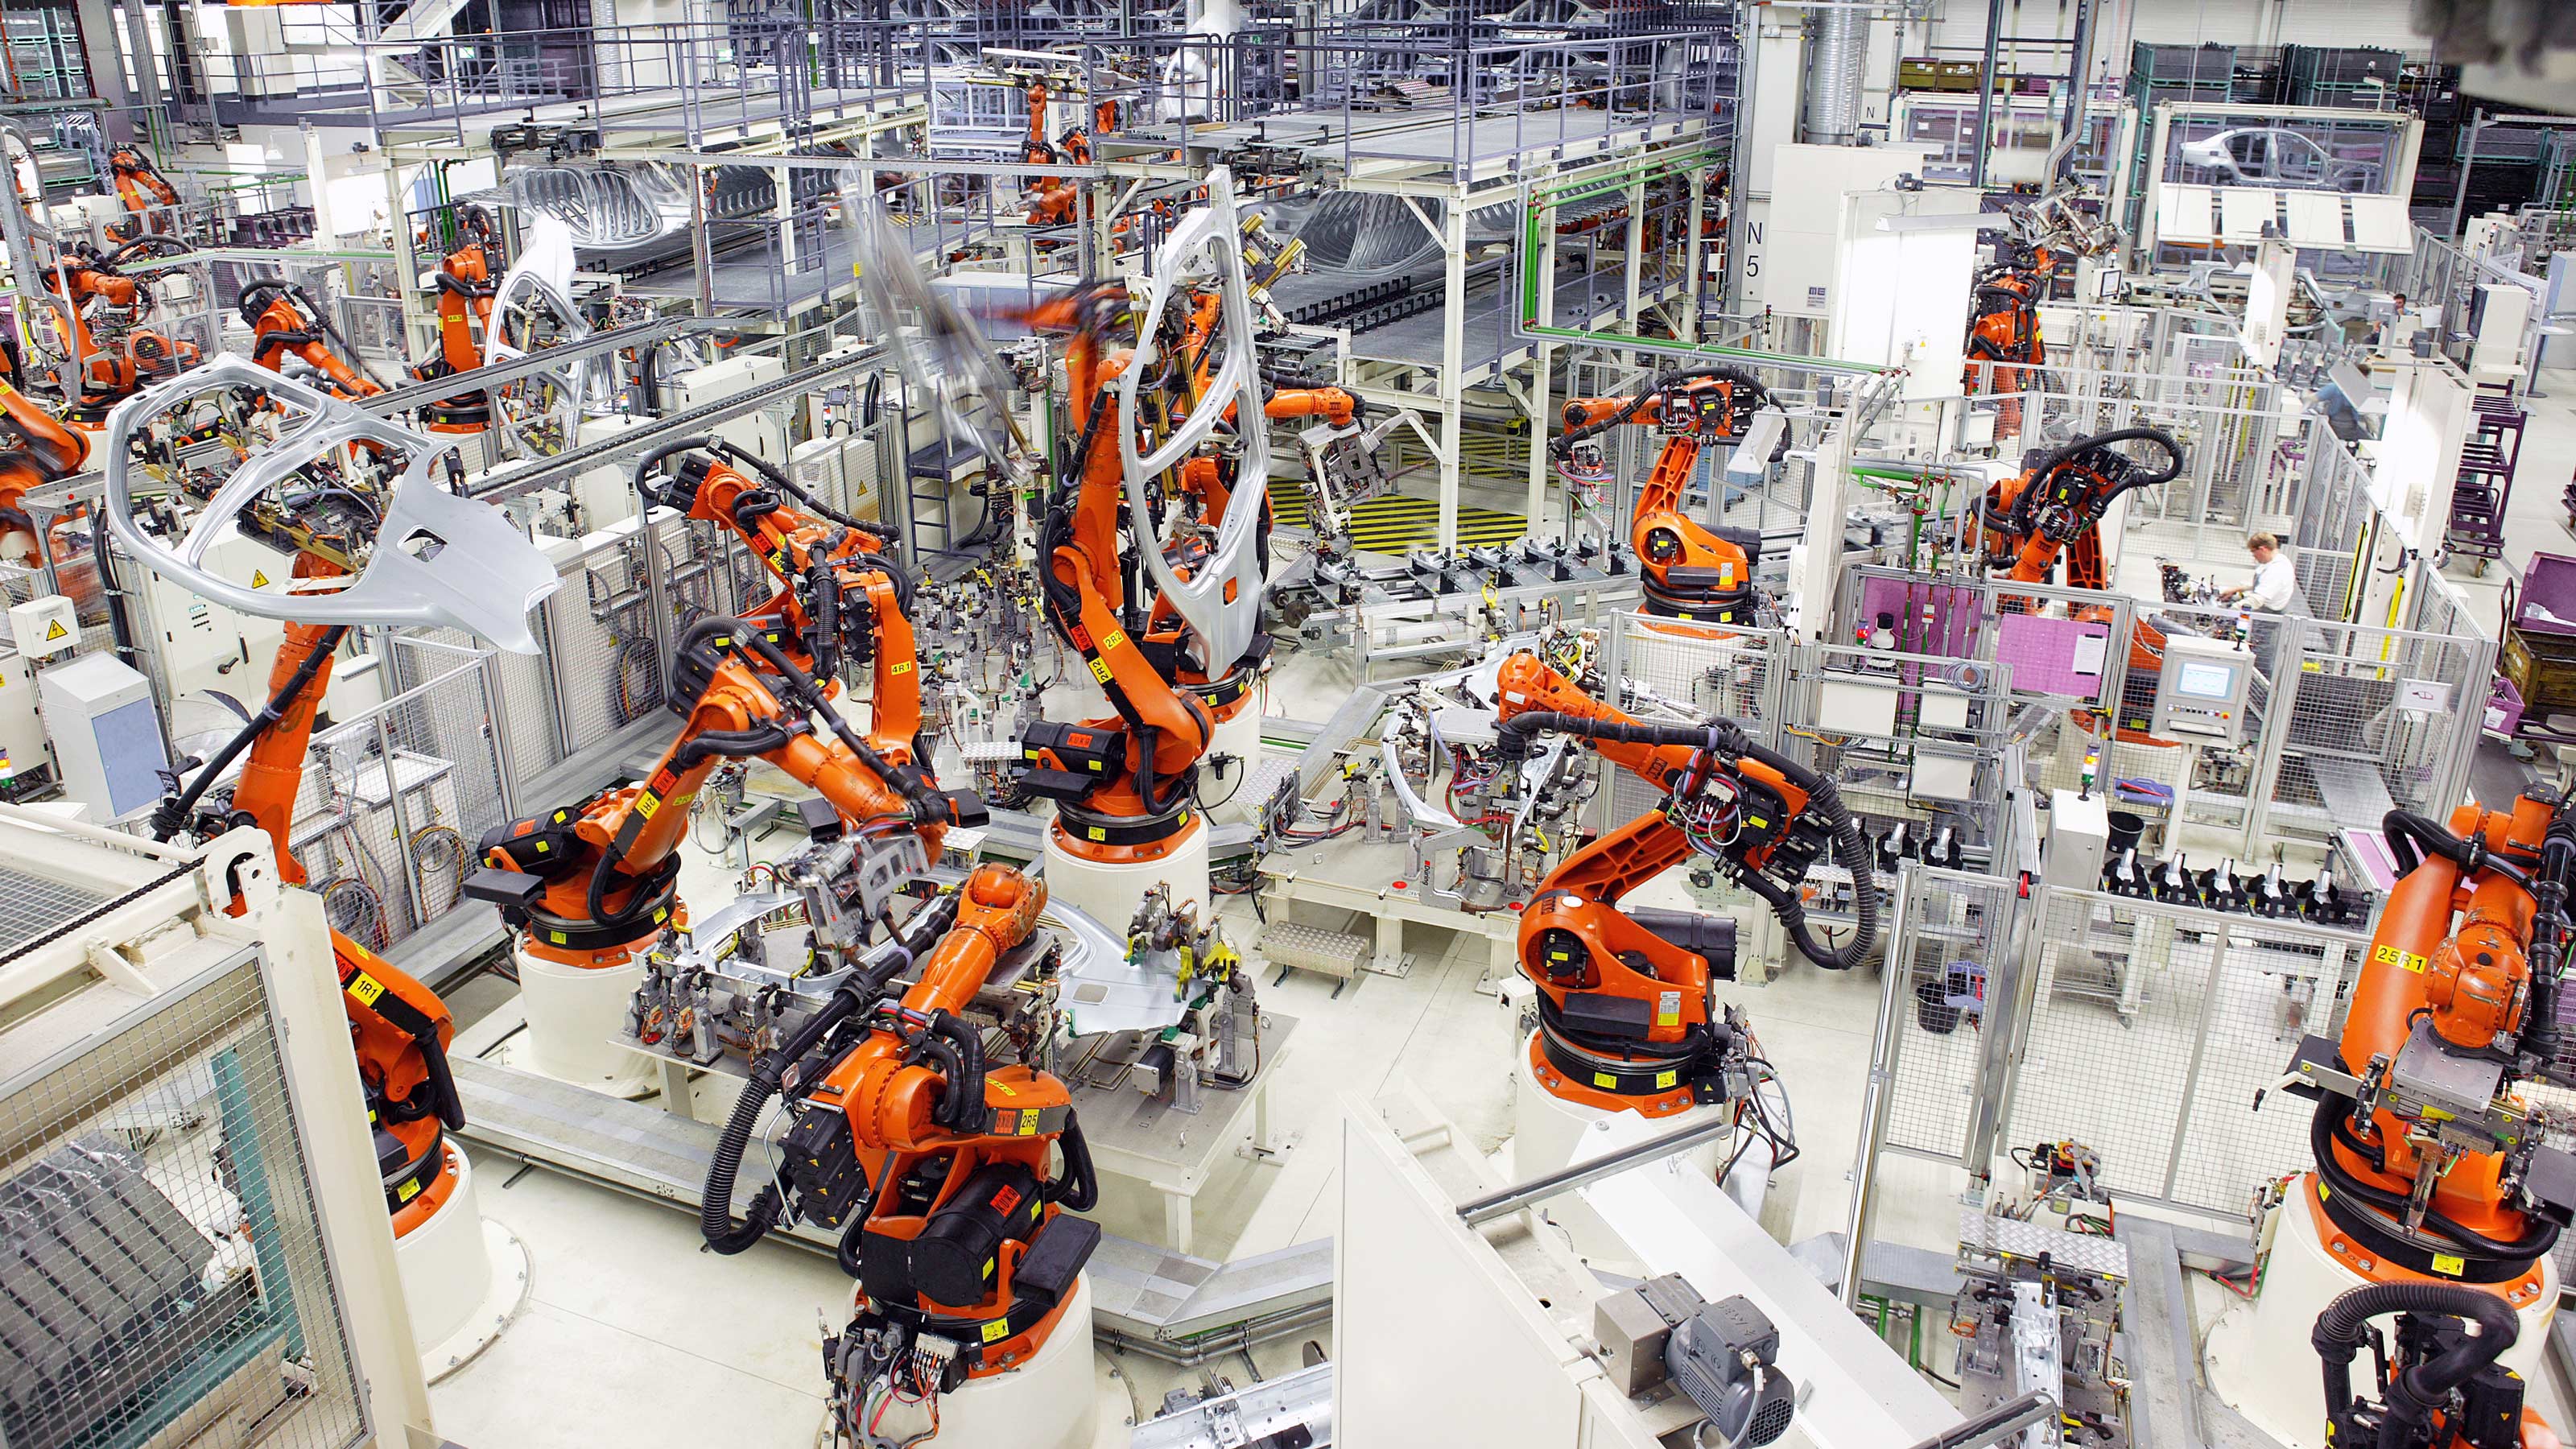 Технопарк автоматизация. Завод фабрика kuka в Германии. Фирма kuka роботы. Промышленные роботы. Машиностроение.